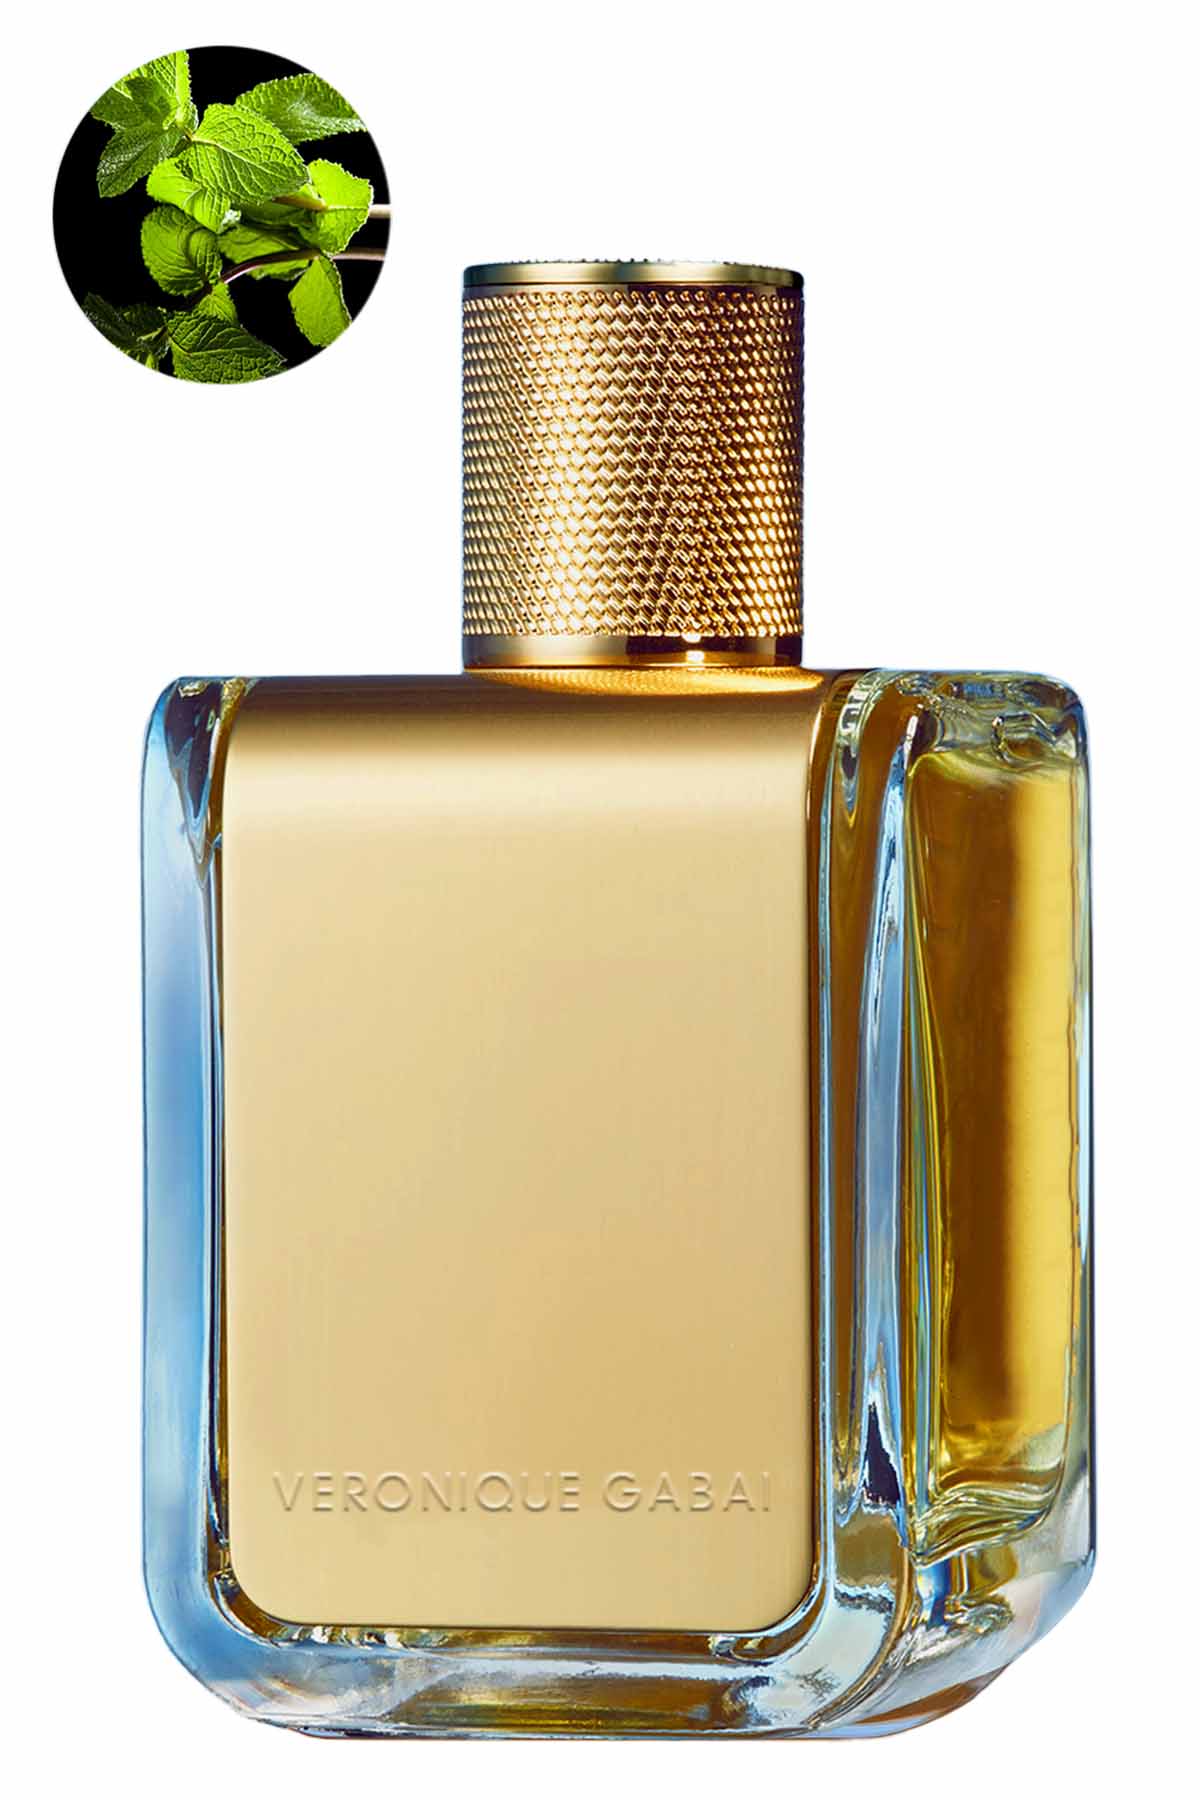 Veronique Gabai Vert Désir Eau de Parfum 85ml